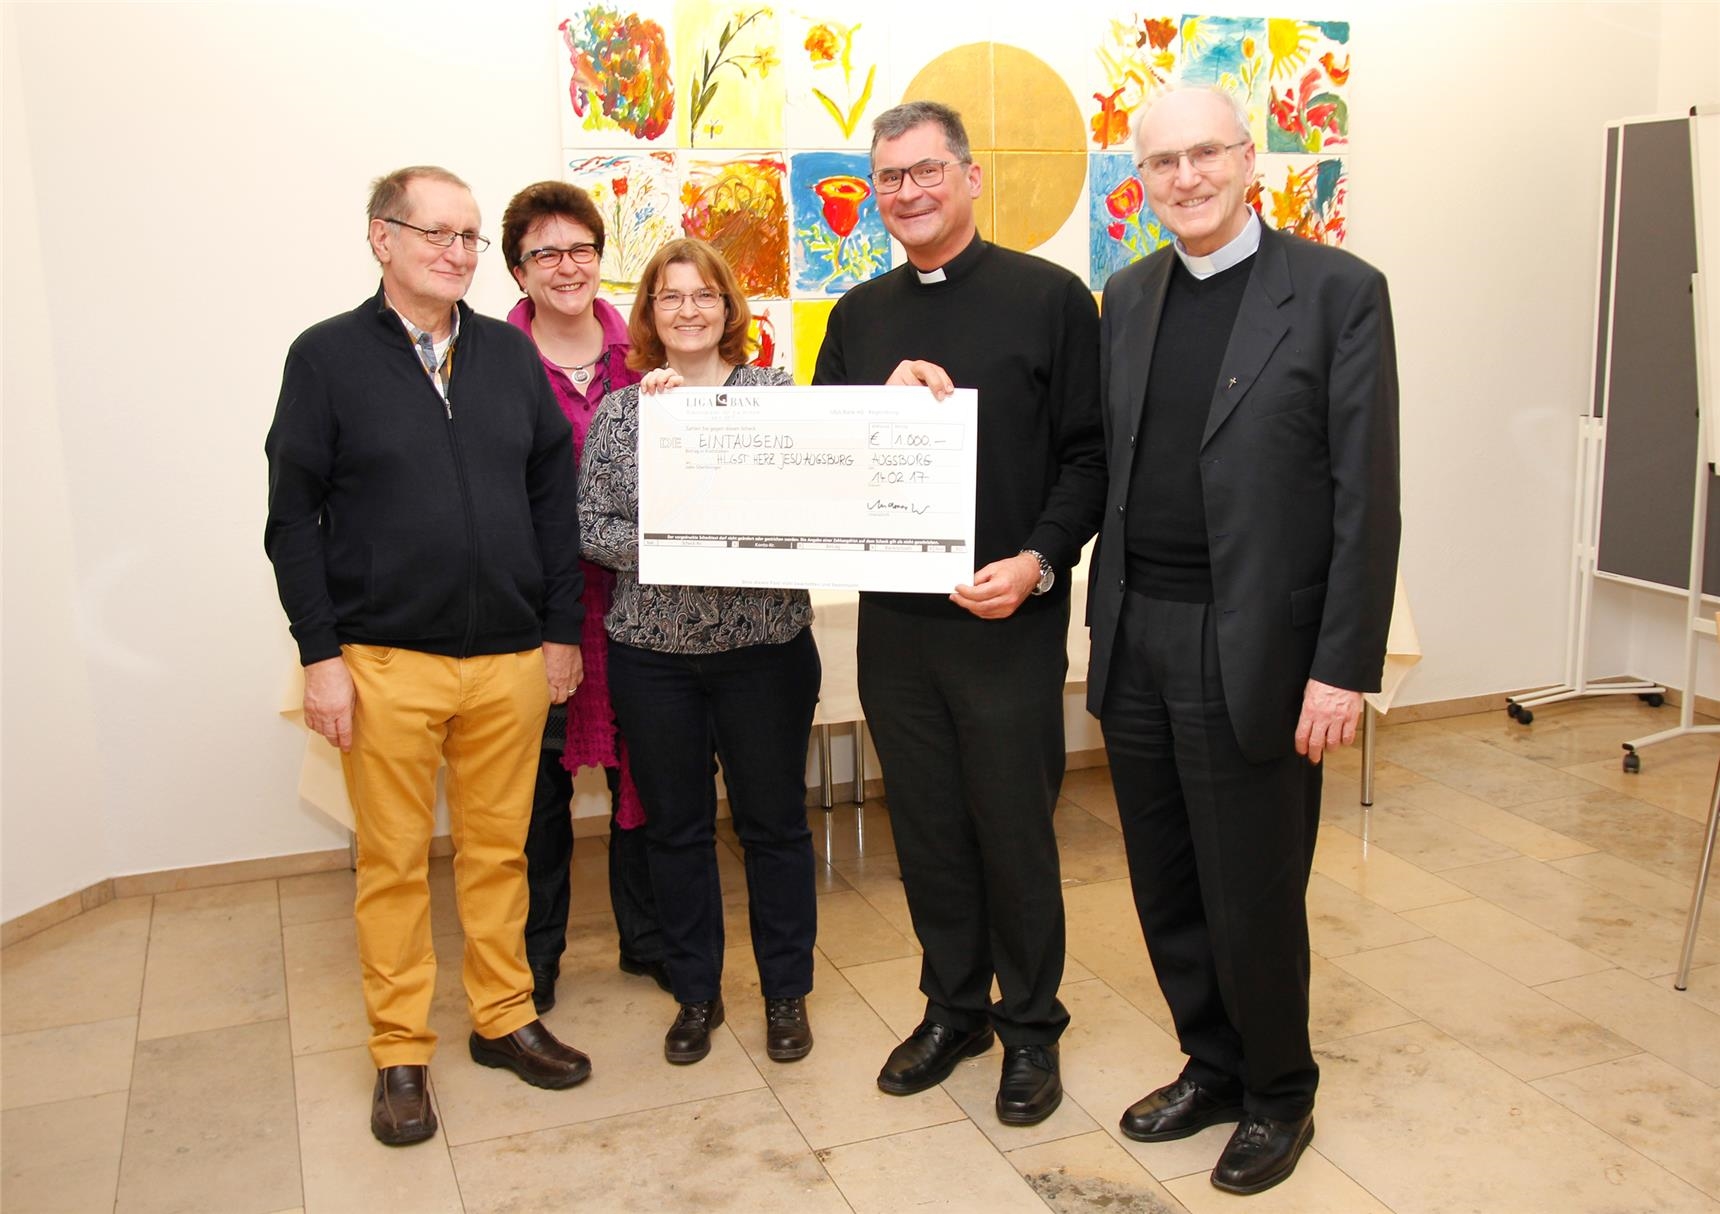 Den dritten Preis in Höhe von 1.000 Euro gewannen das Team des Arbeitskreises Willkommen der Pfarrgemeinde Heiligstes Herz Jesu, Augsburg-Pfersee. (Bernhard Gattner)